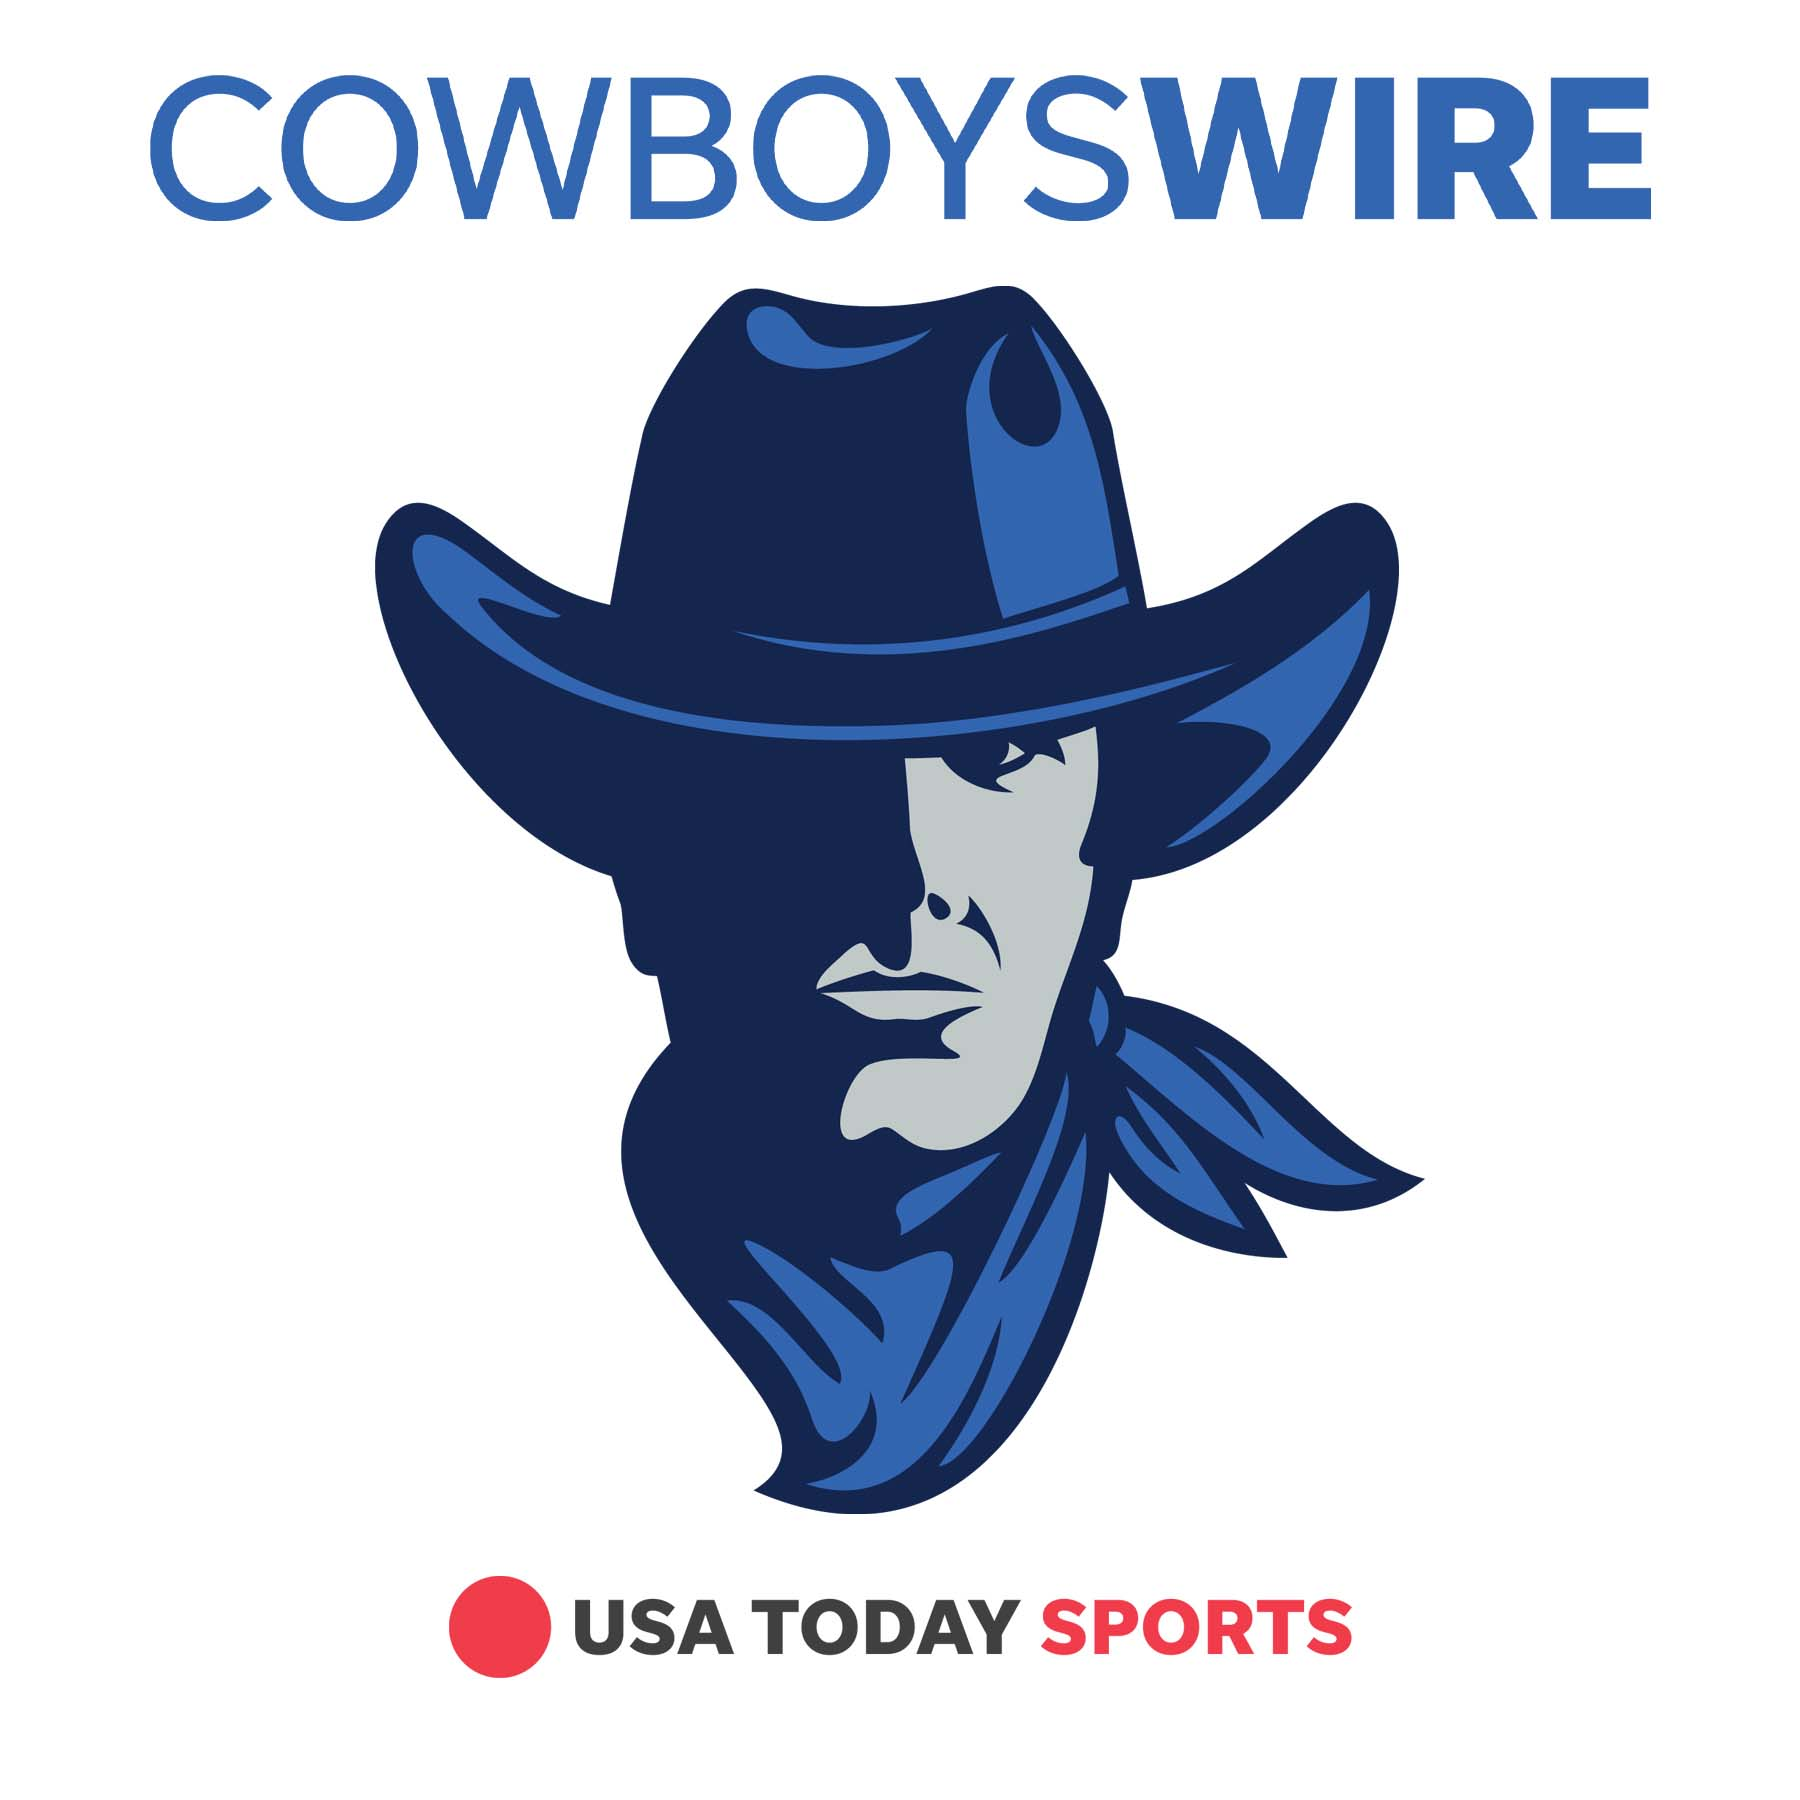 Cowboys’ insane offensive efficiency is rendering foes defenseless